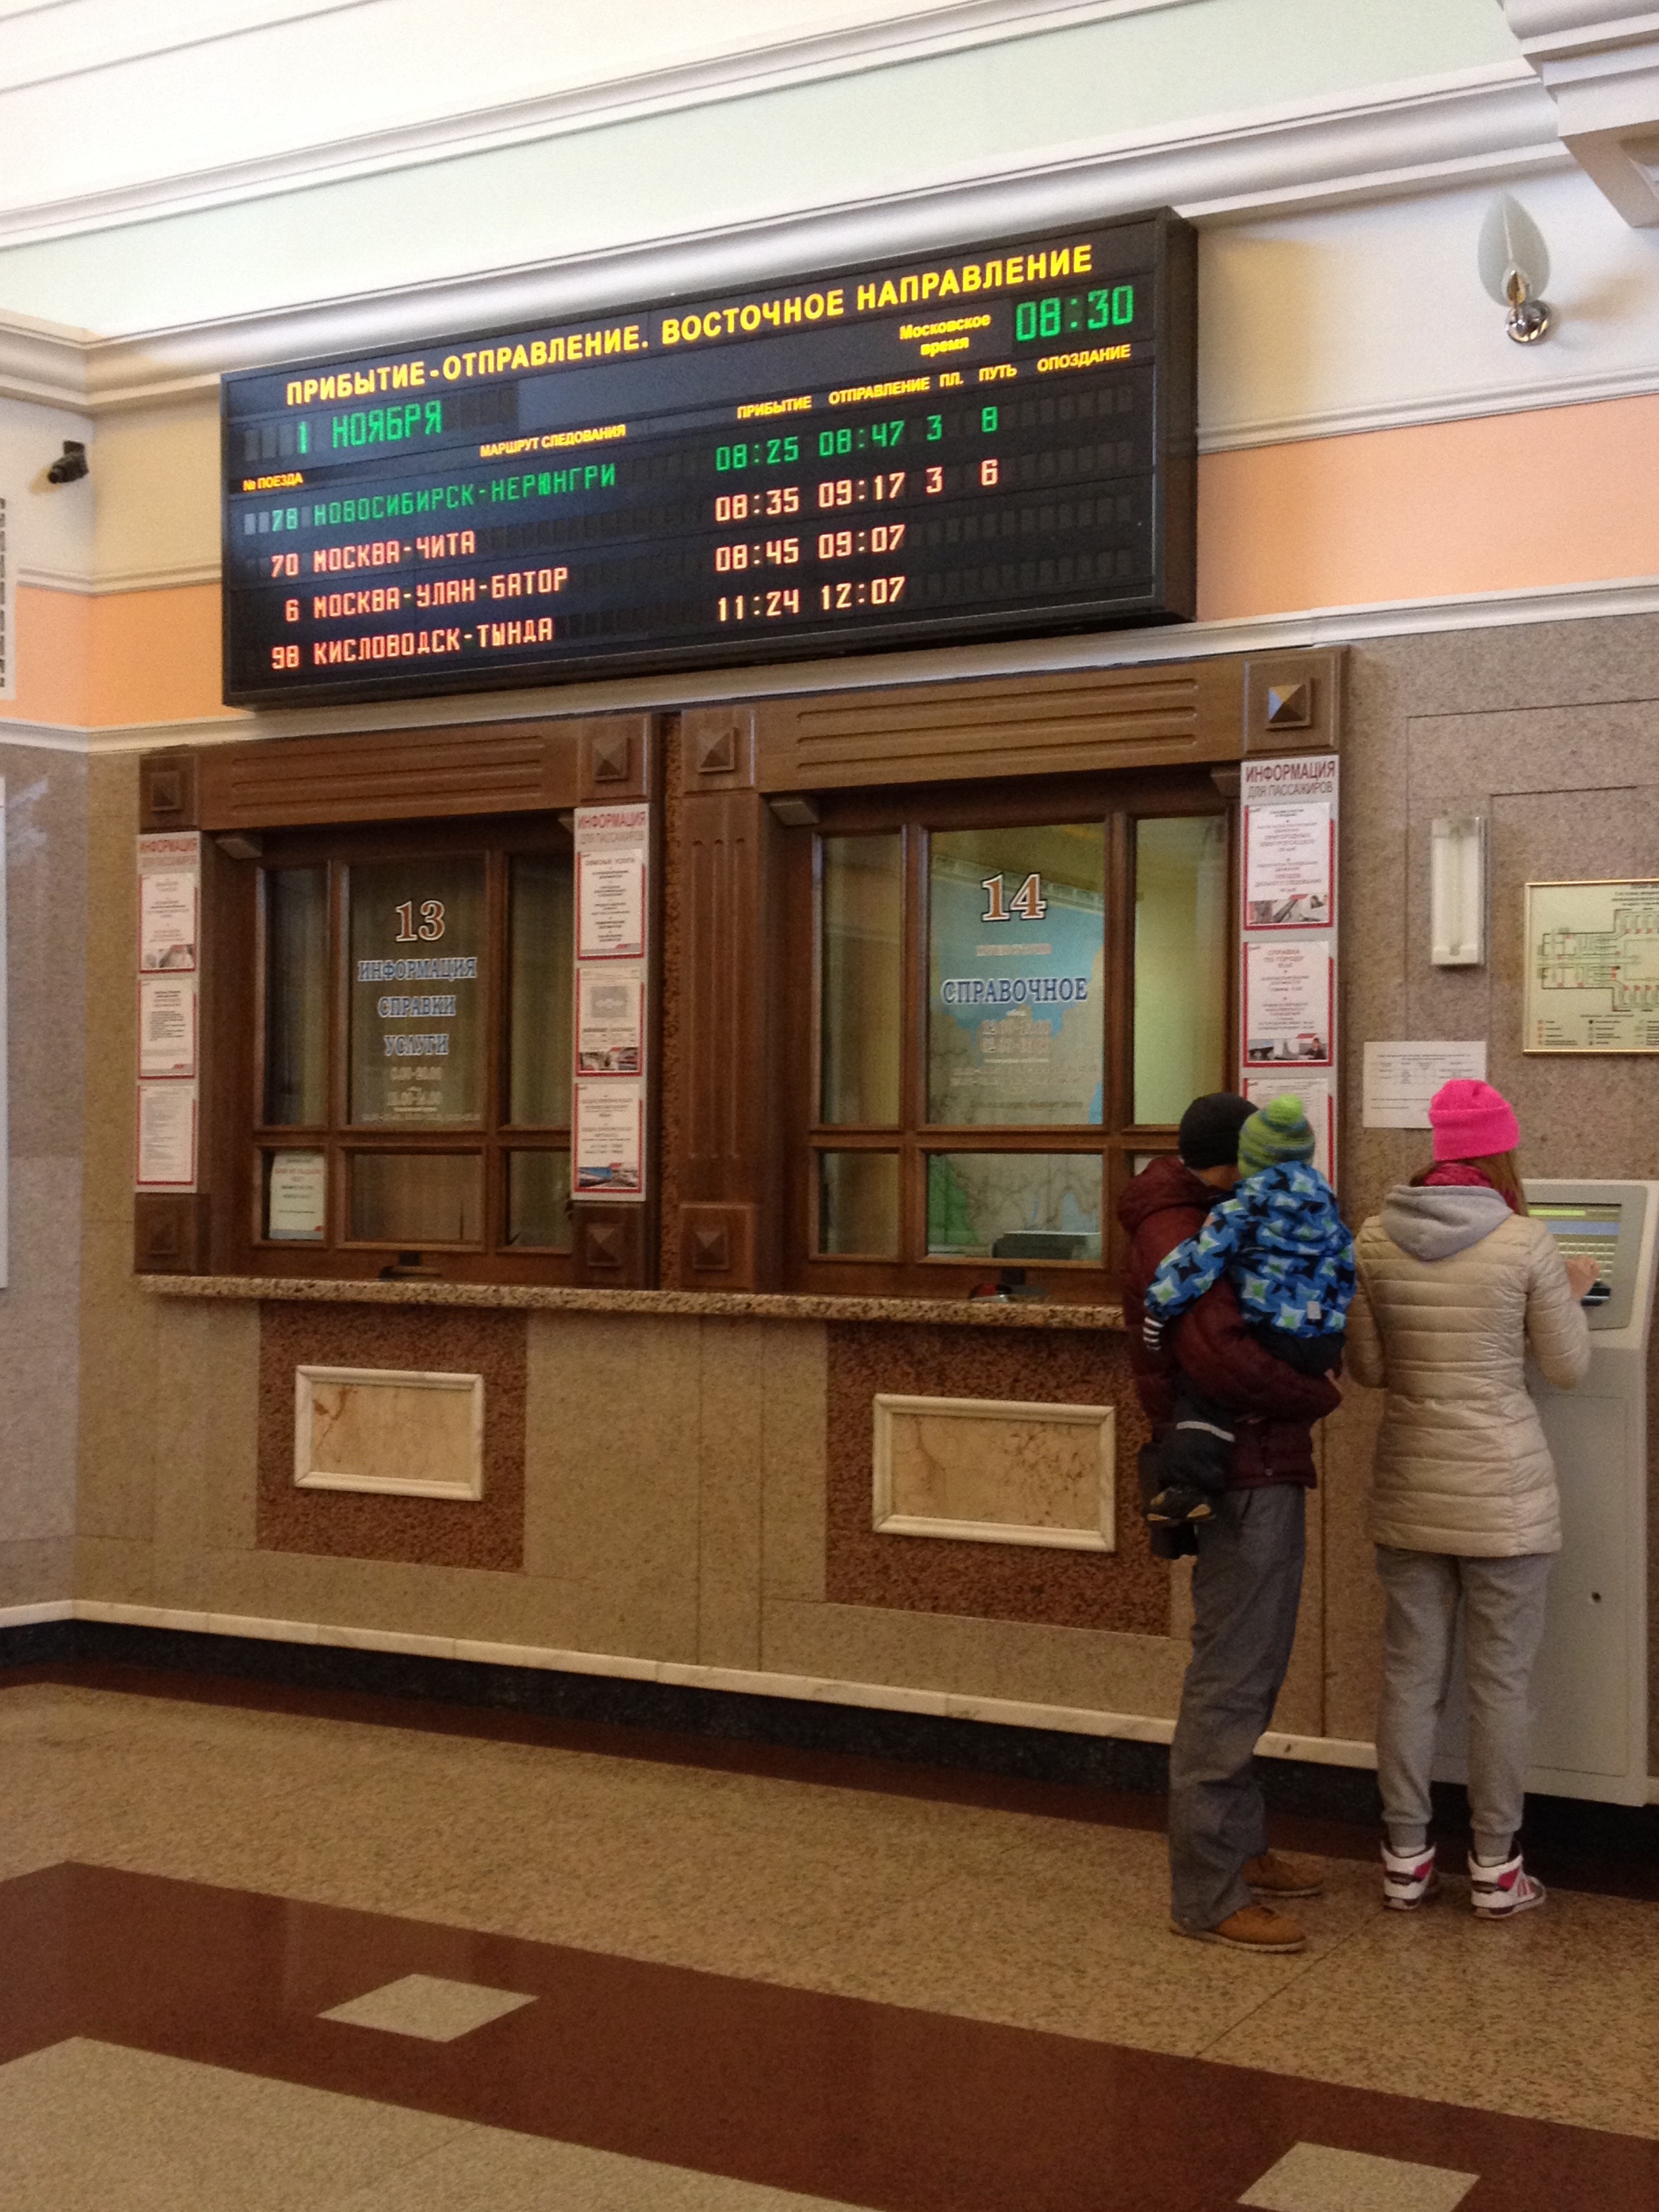 Deux trains sont notamment annoncés, en provenance de Moscou. L'un va jusqu'à Tchita, l'autre jusqu'à Oulan-Bator, capitale de la Mongolie.